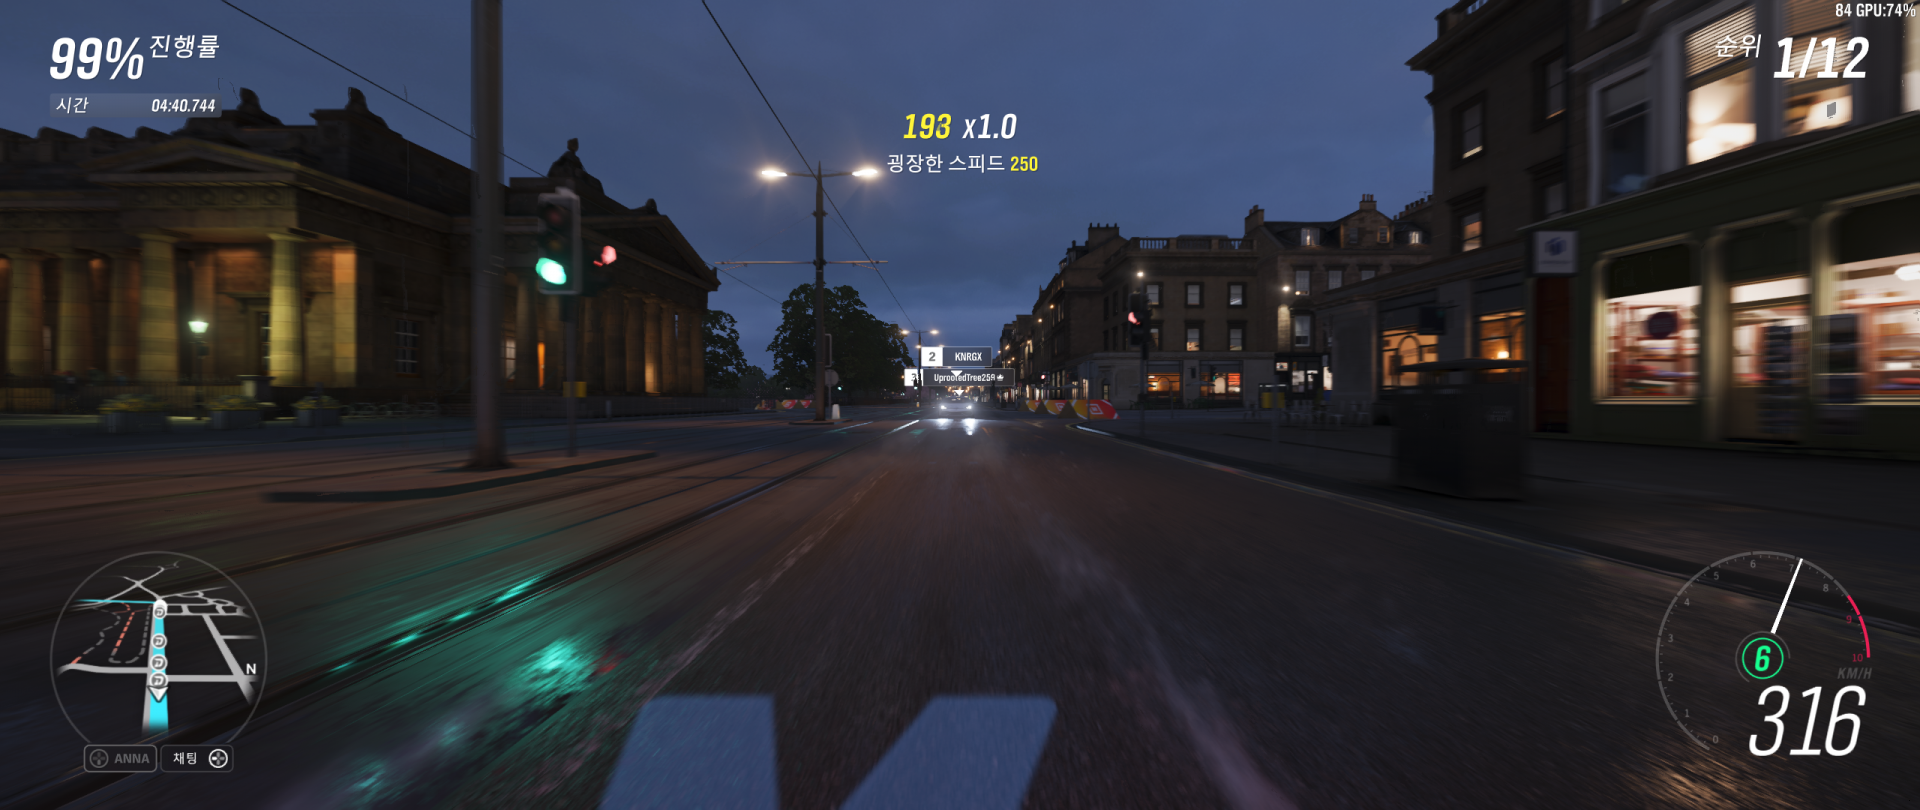 Forza Horizon 4 Screenshot 2018.10.21 - 01.17.40.55.png